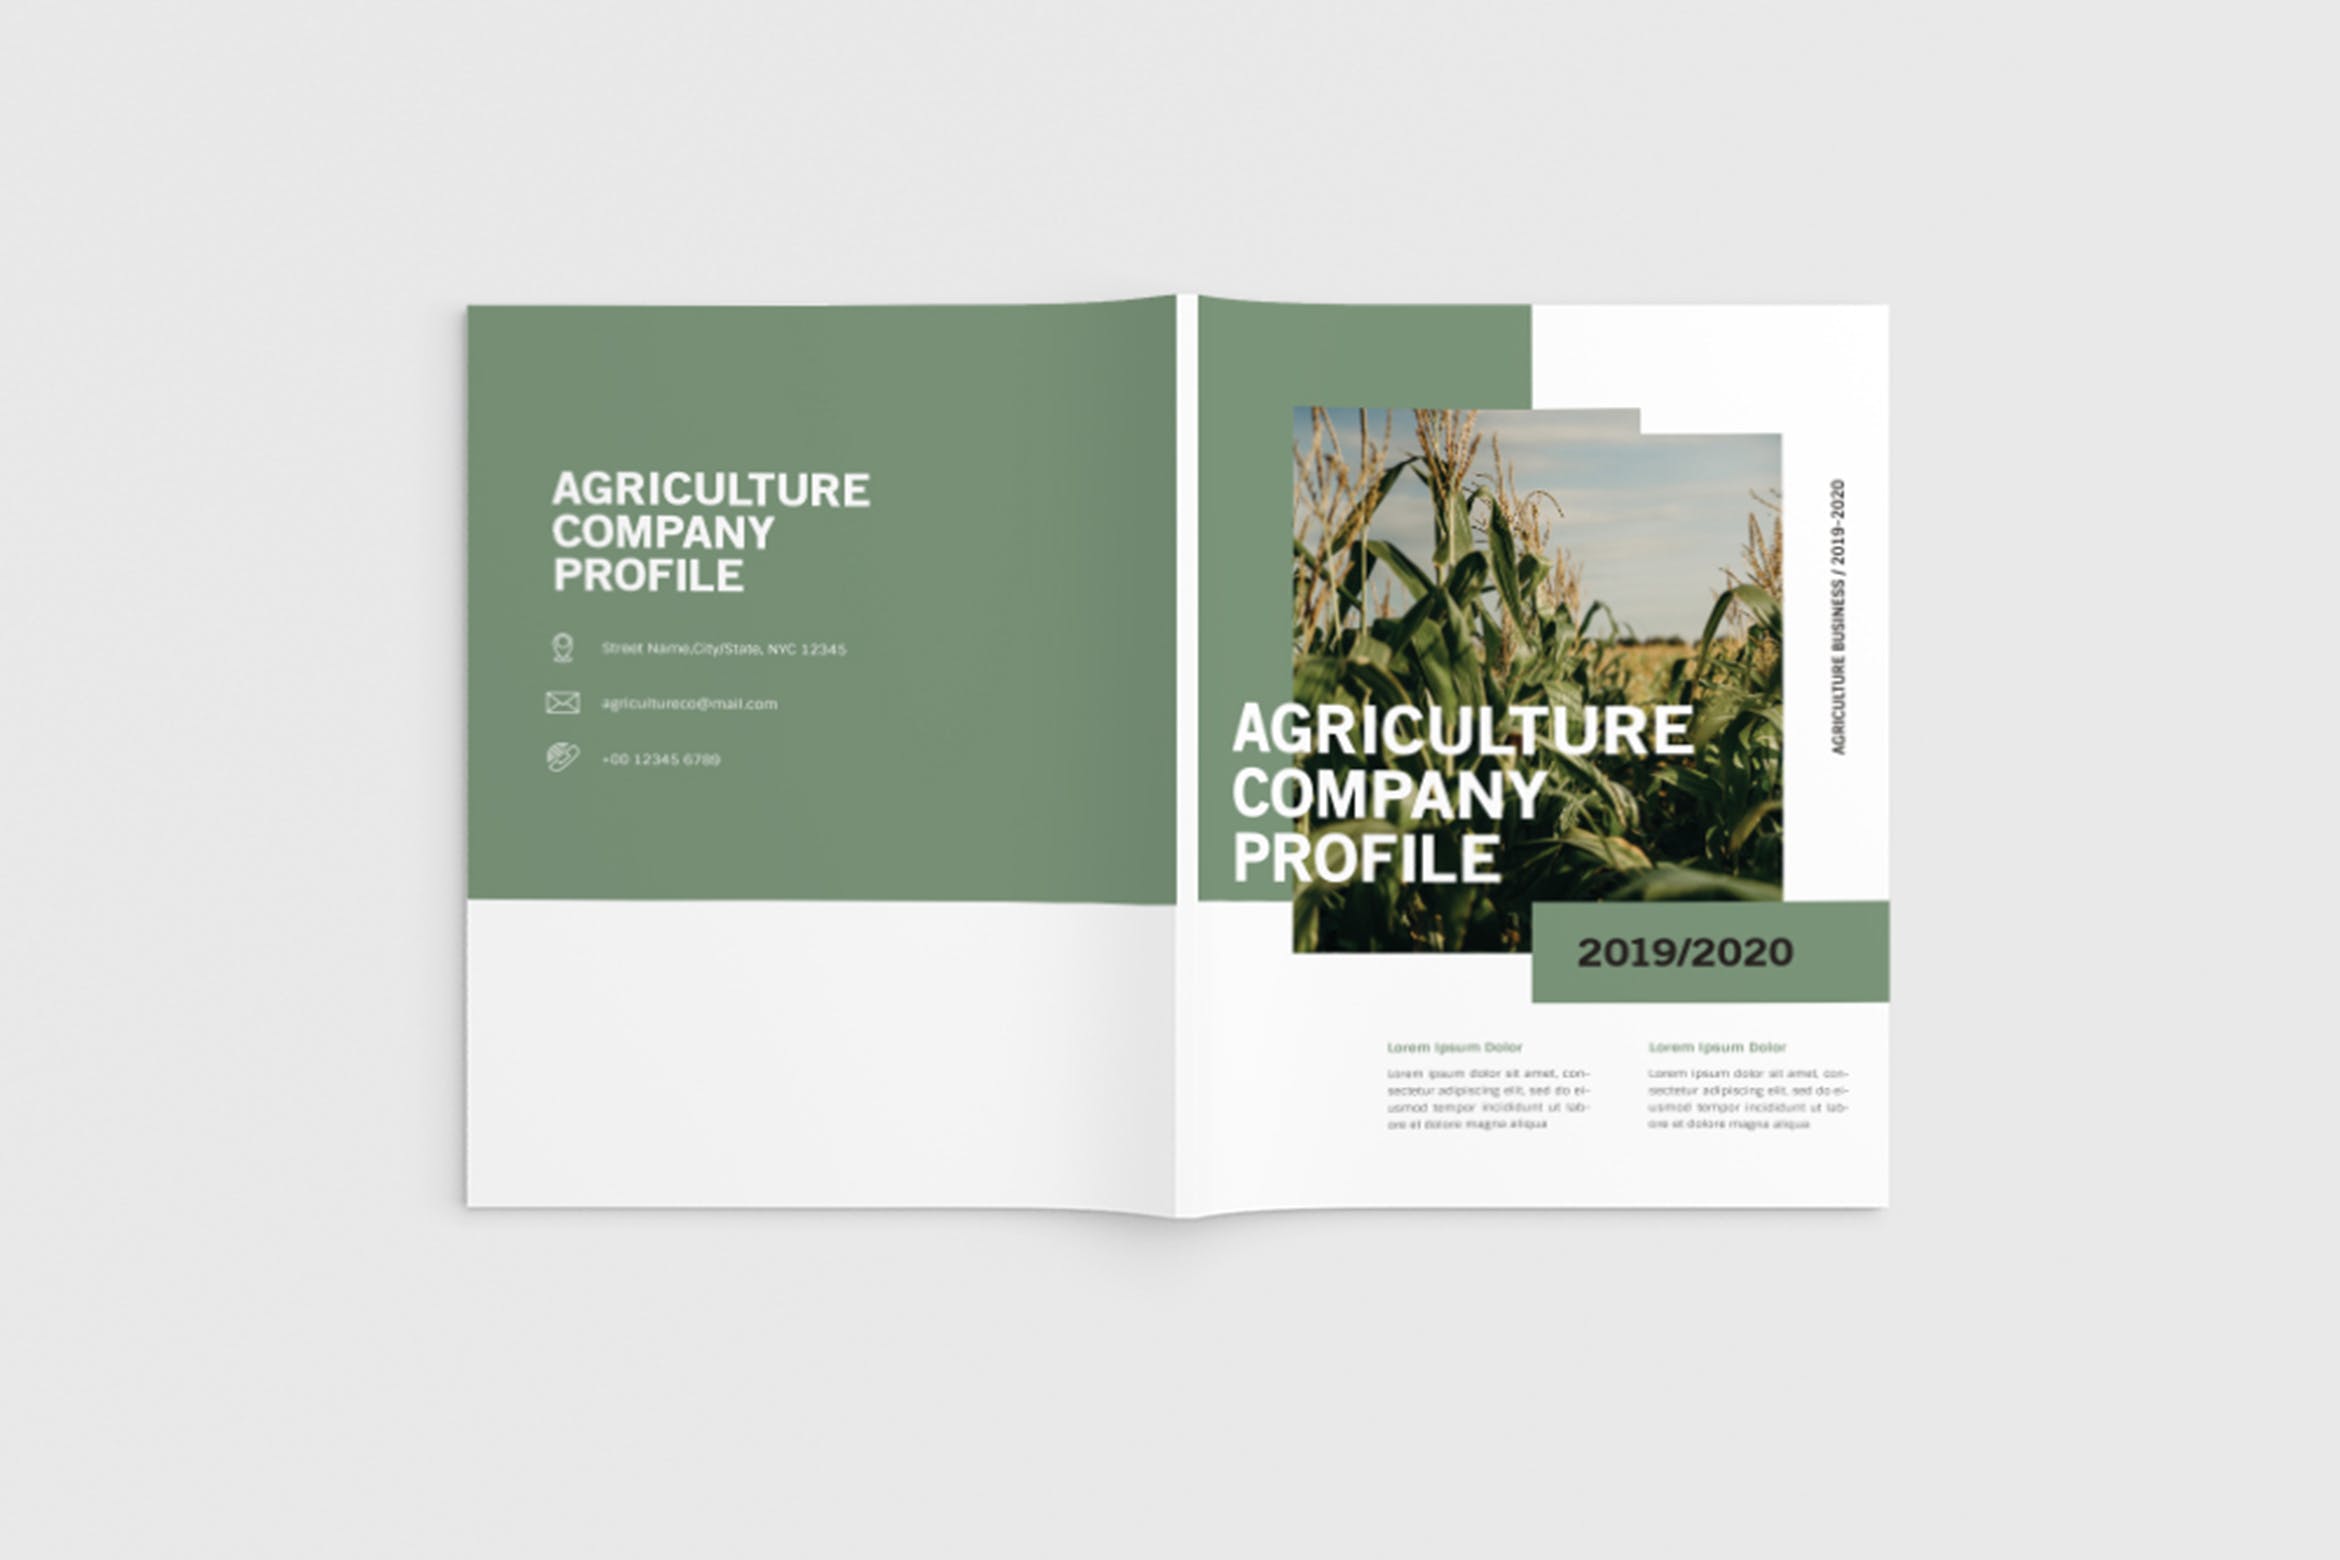 农业绿色食品公司简介企业画册设计模板 Agriculture Company Profile插图